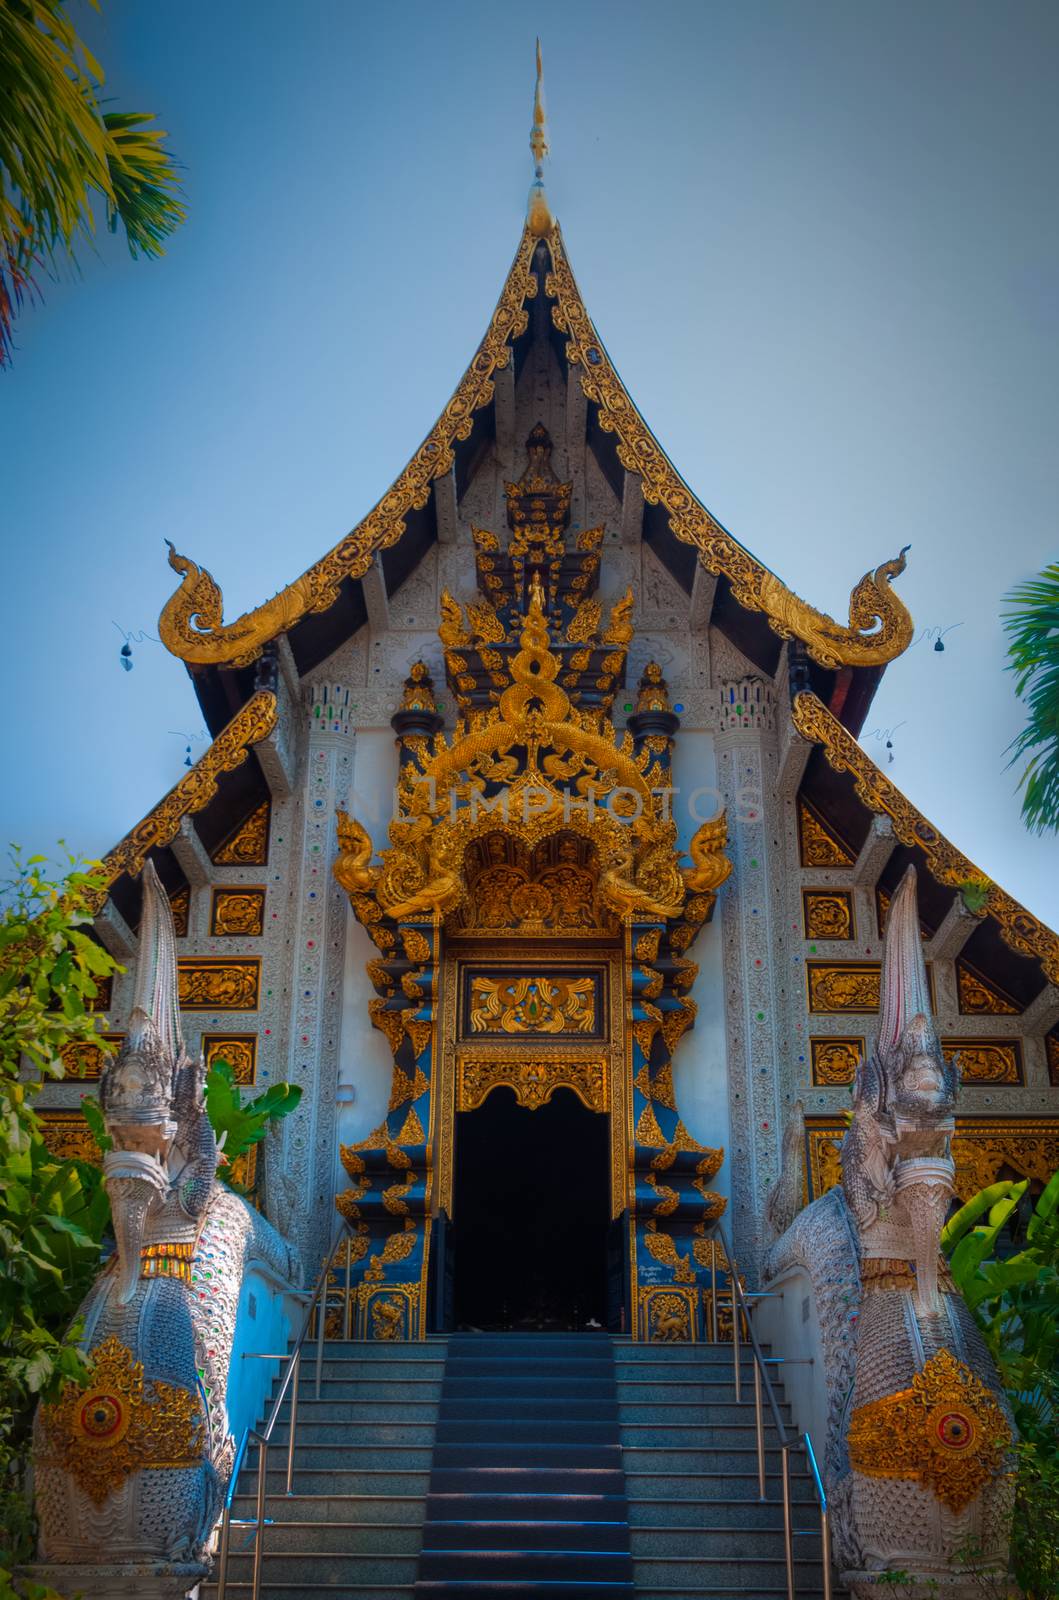 Thai style buddist temple